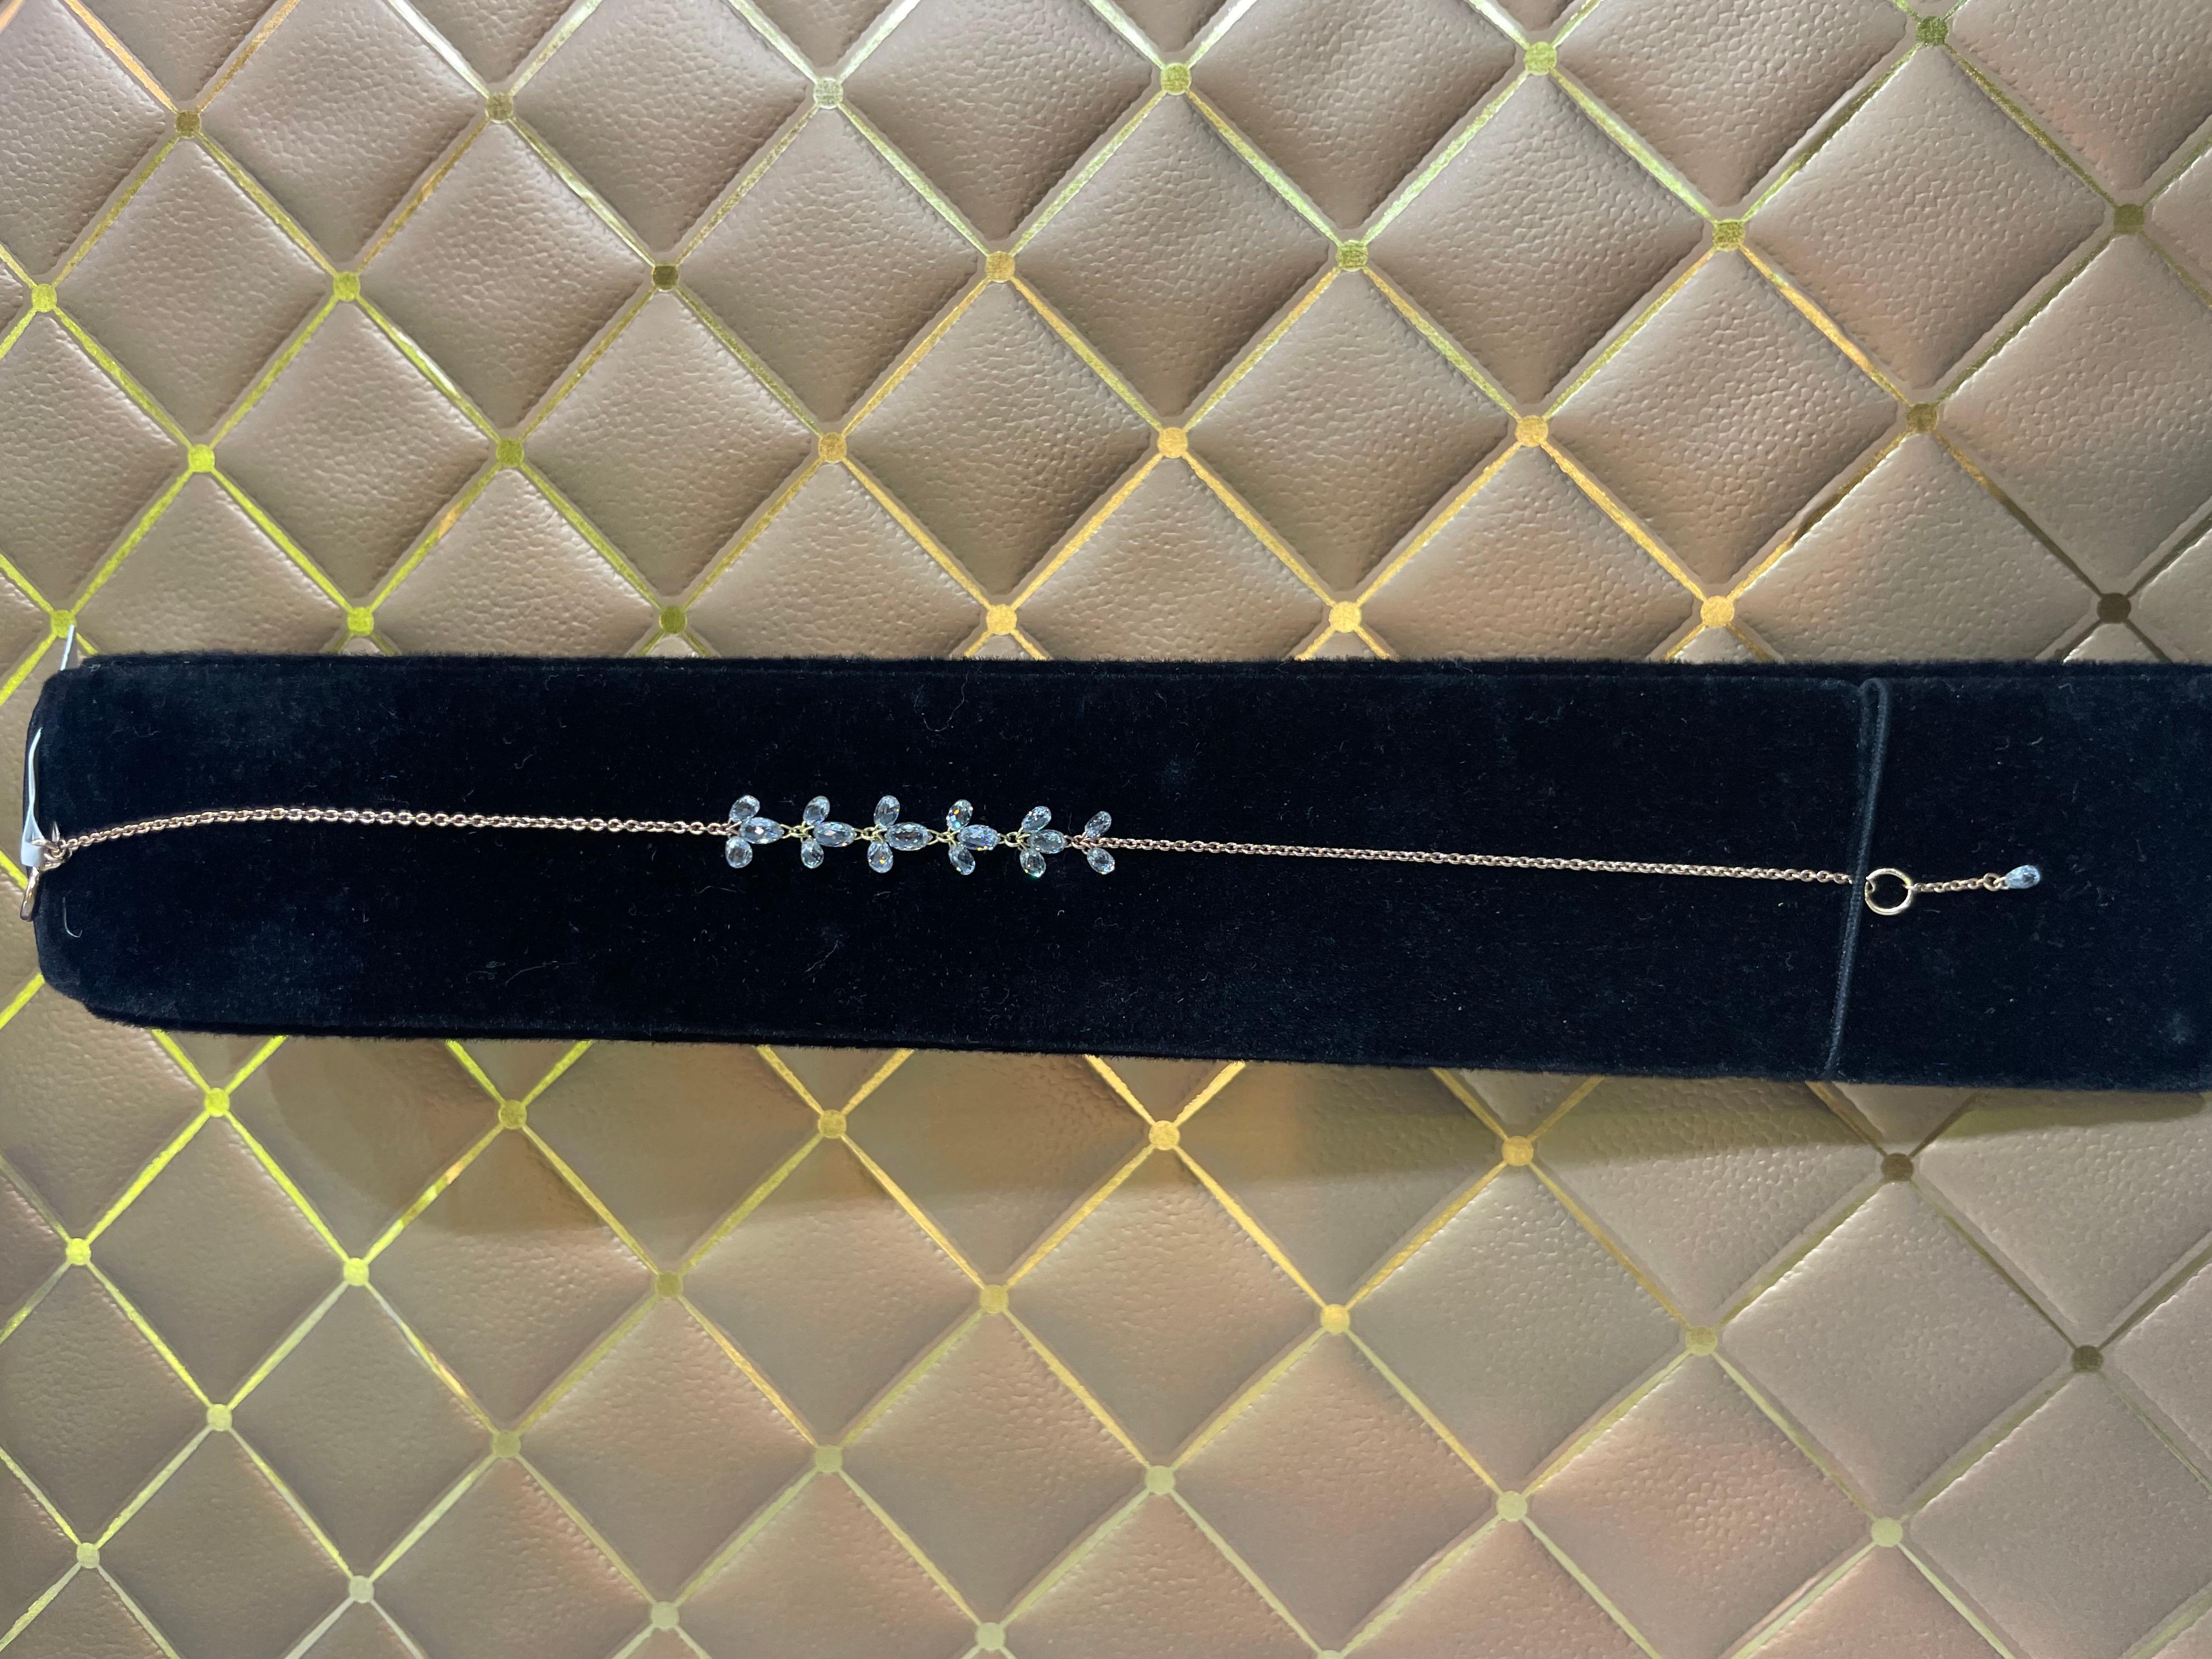 Bracelet floral Briolette de diamants PANIM en or rose 18 carats

Notre bracelet suspendu en diamants taillés en briolette est extrêmement facile à porter. Sa polyvalence et son design classique en font un compagnon idéal pour diverses occasions.